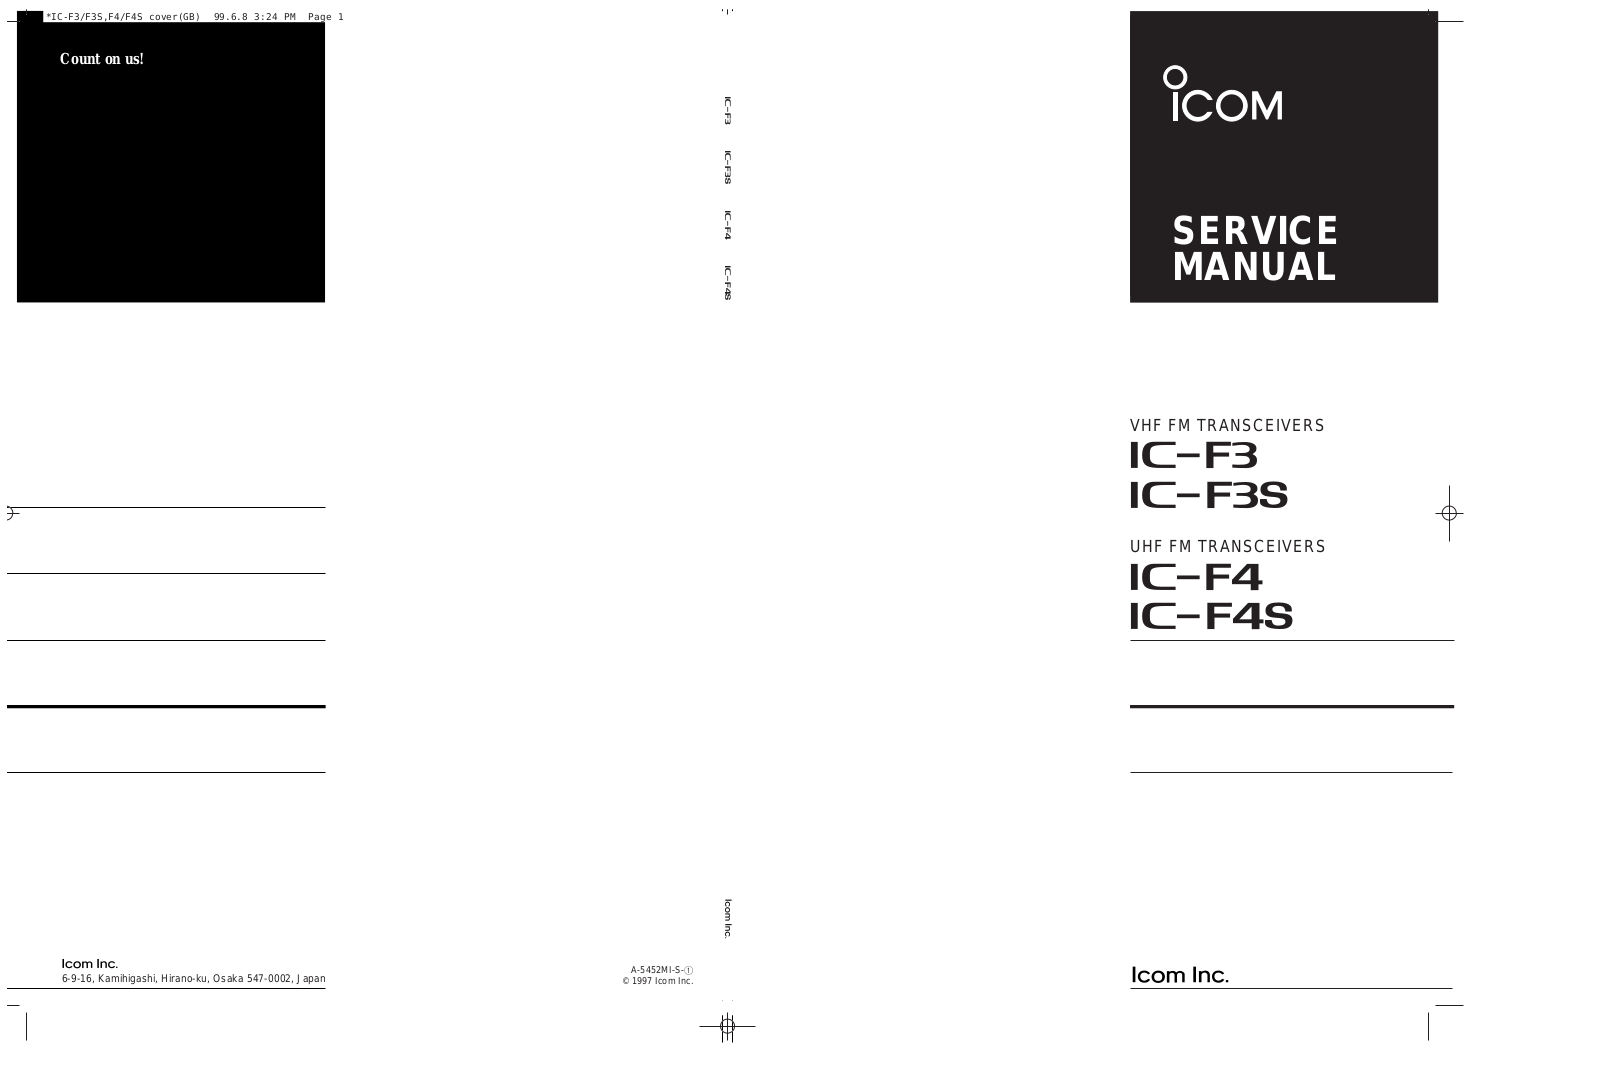 Icom IC-F4S, IC-F4, IC-F3S, IC-F3 Service Manual